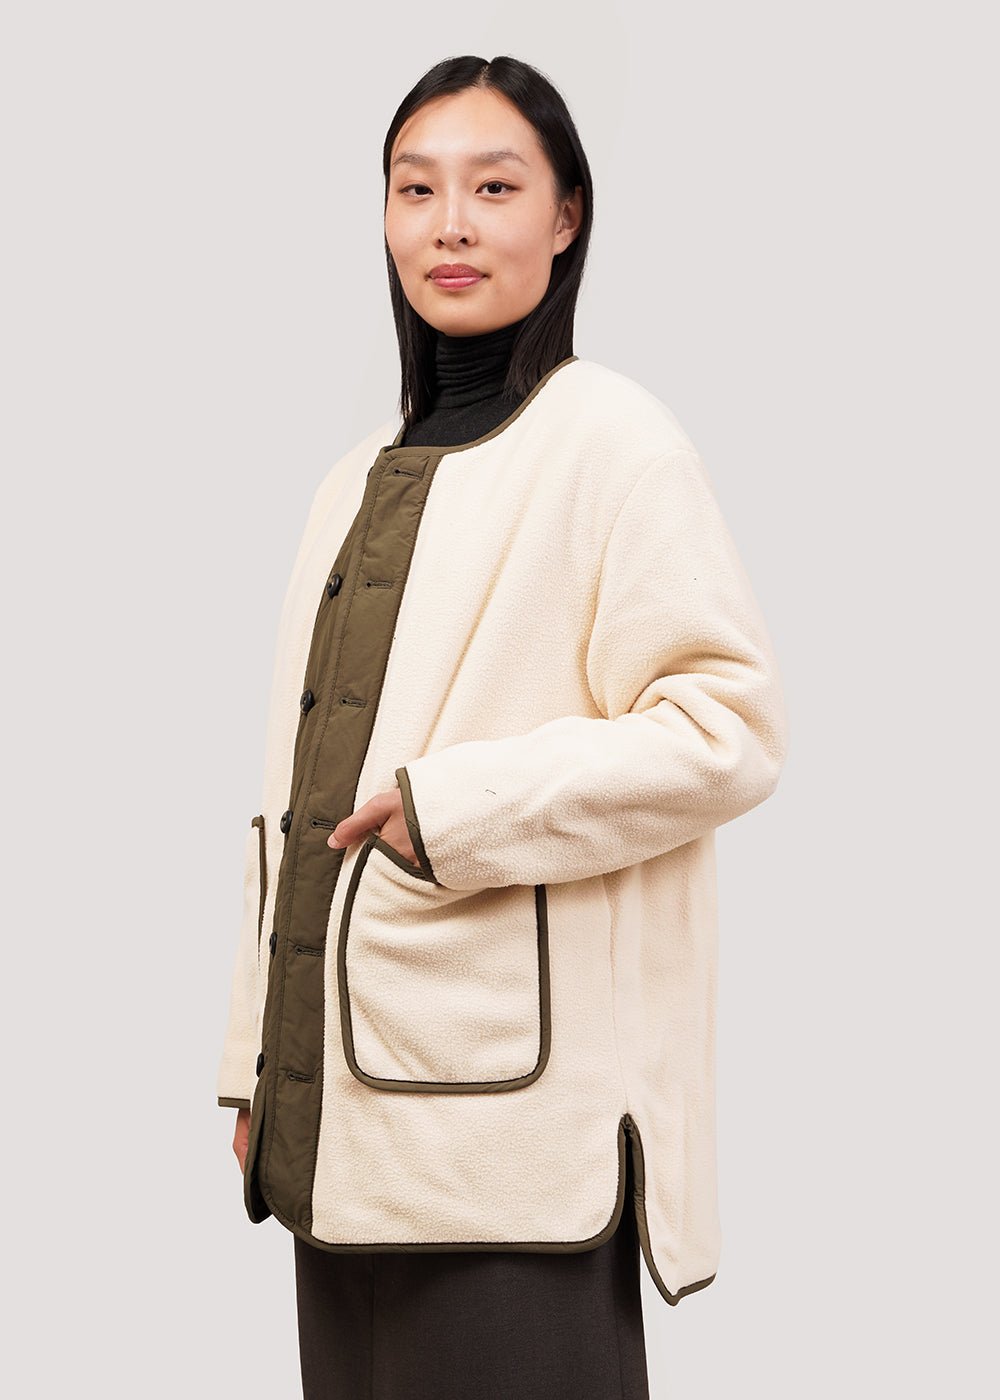 Mijeong Park Olive/Cream Reversible Padded Jacket - New Classics Studios Sustainable Ethical Fashion Canada